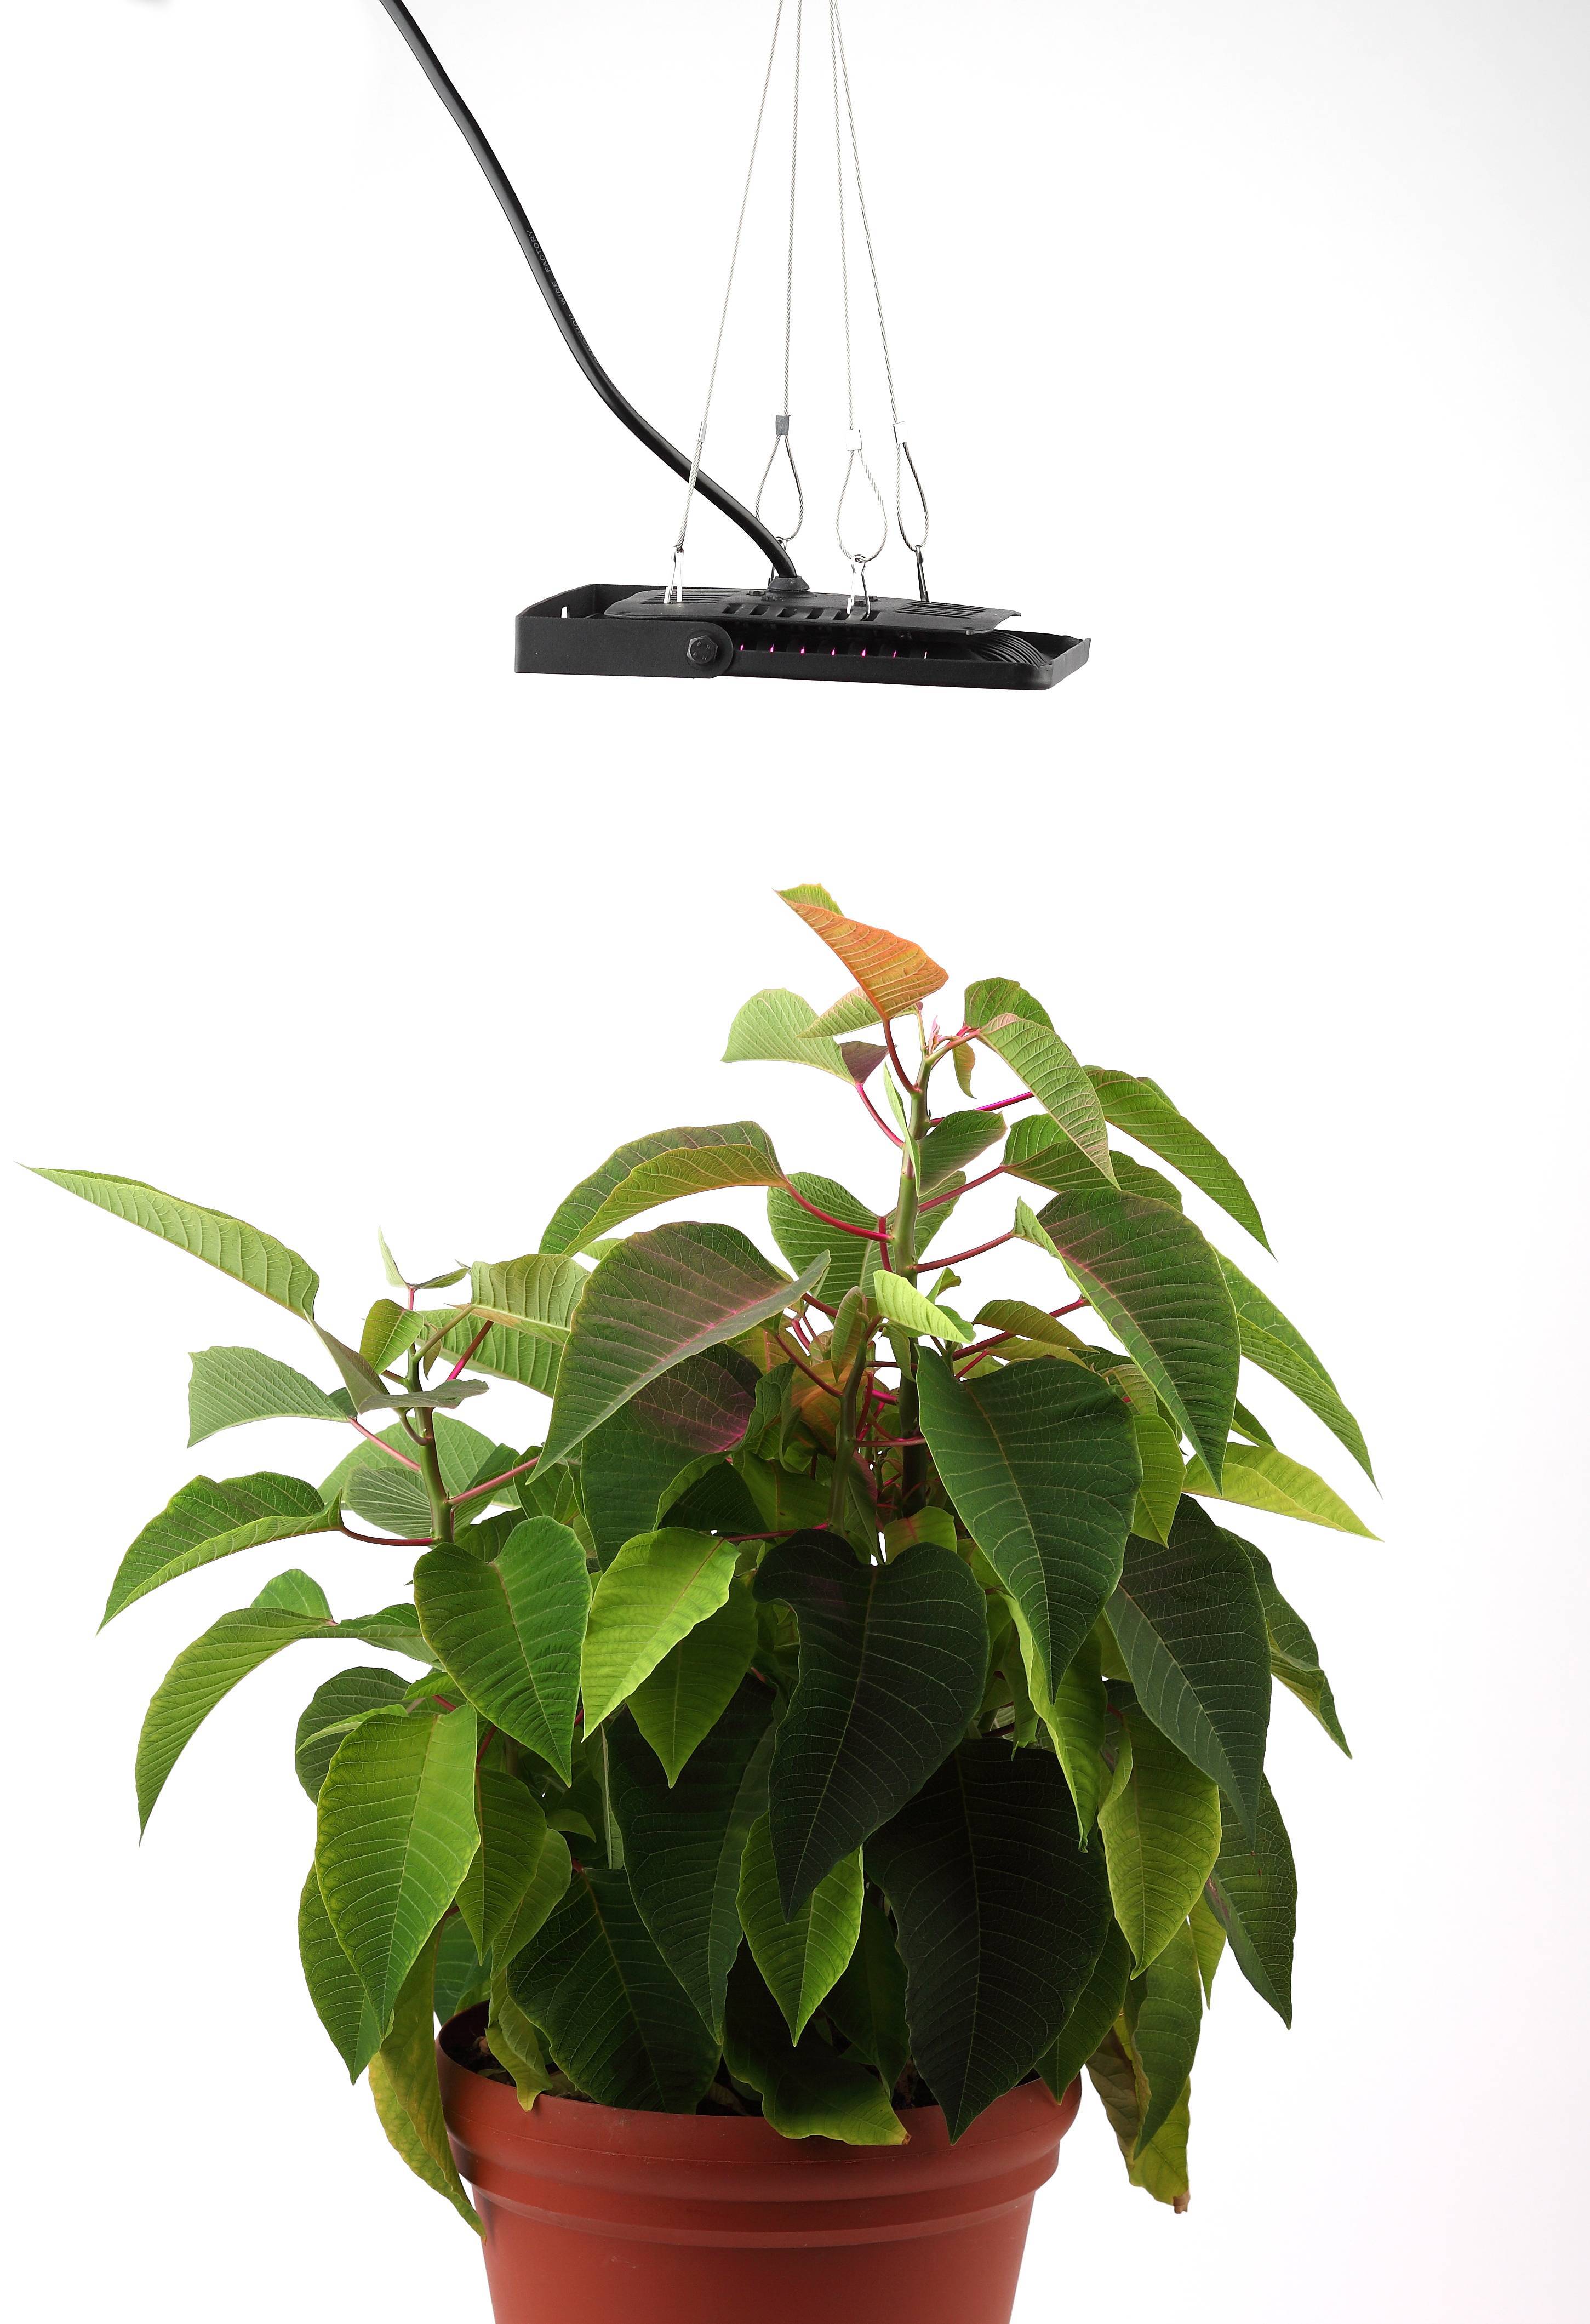 Прожектор для растений